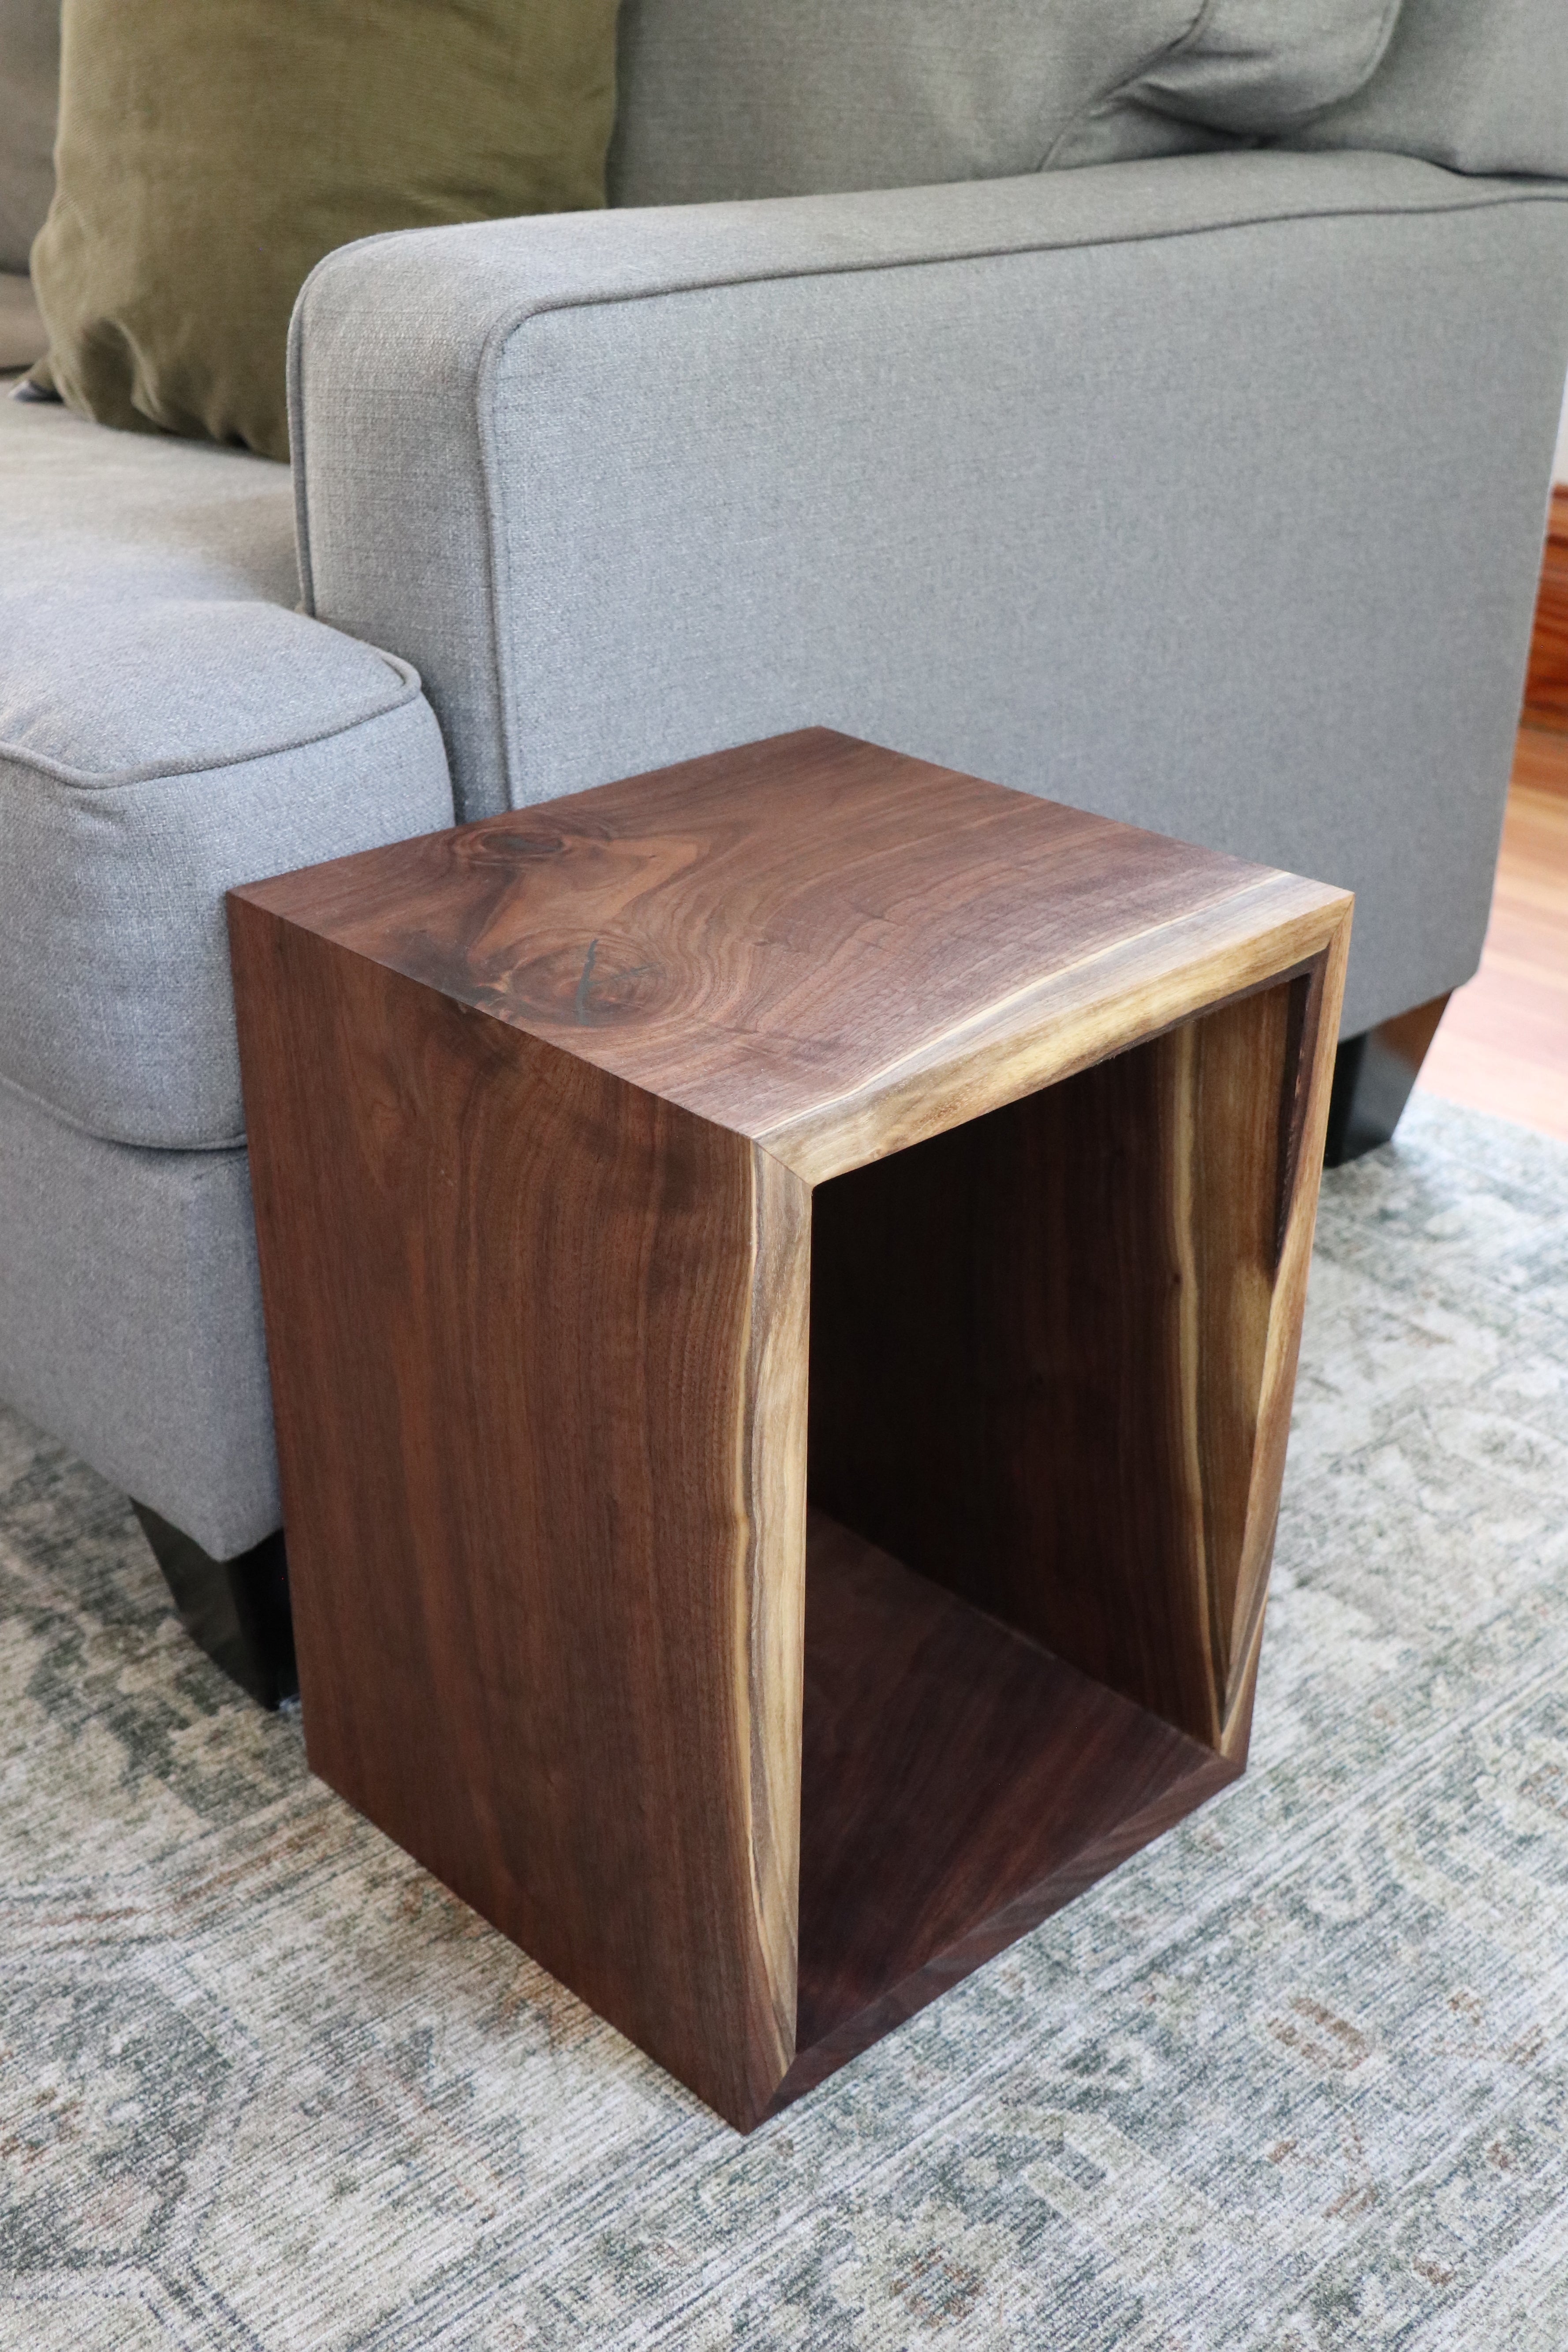 Complete Walnut Waterfall Cube Rectangle Side Table, Cuboid End Table - Hazel Oak Farms Handmade Furniture in Iowa, USA